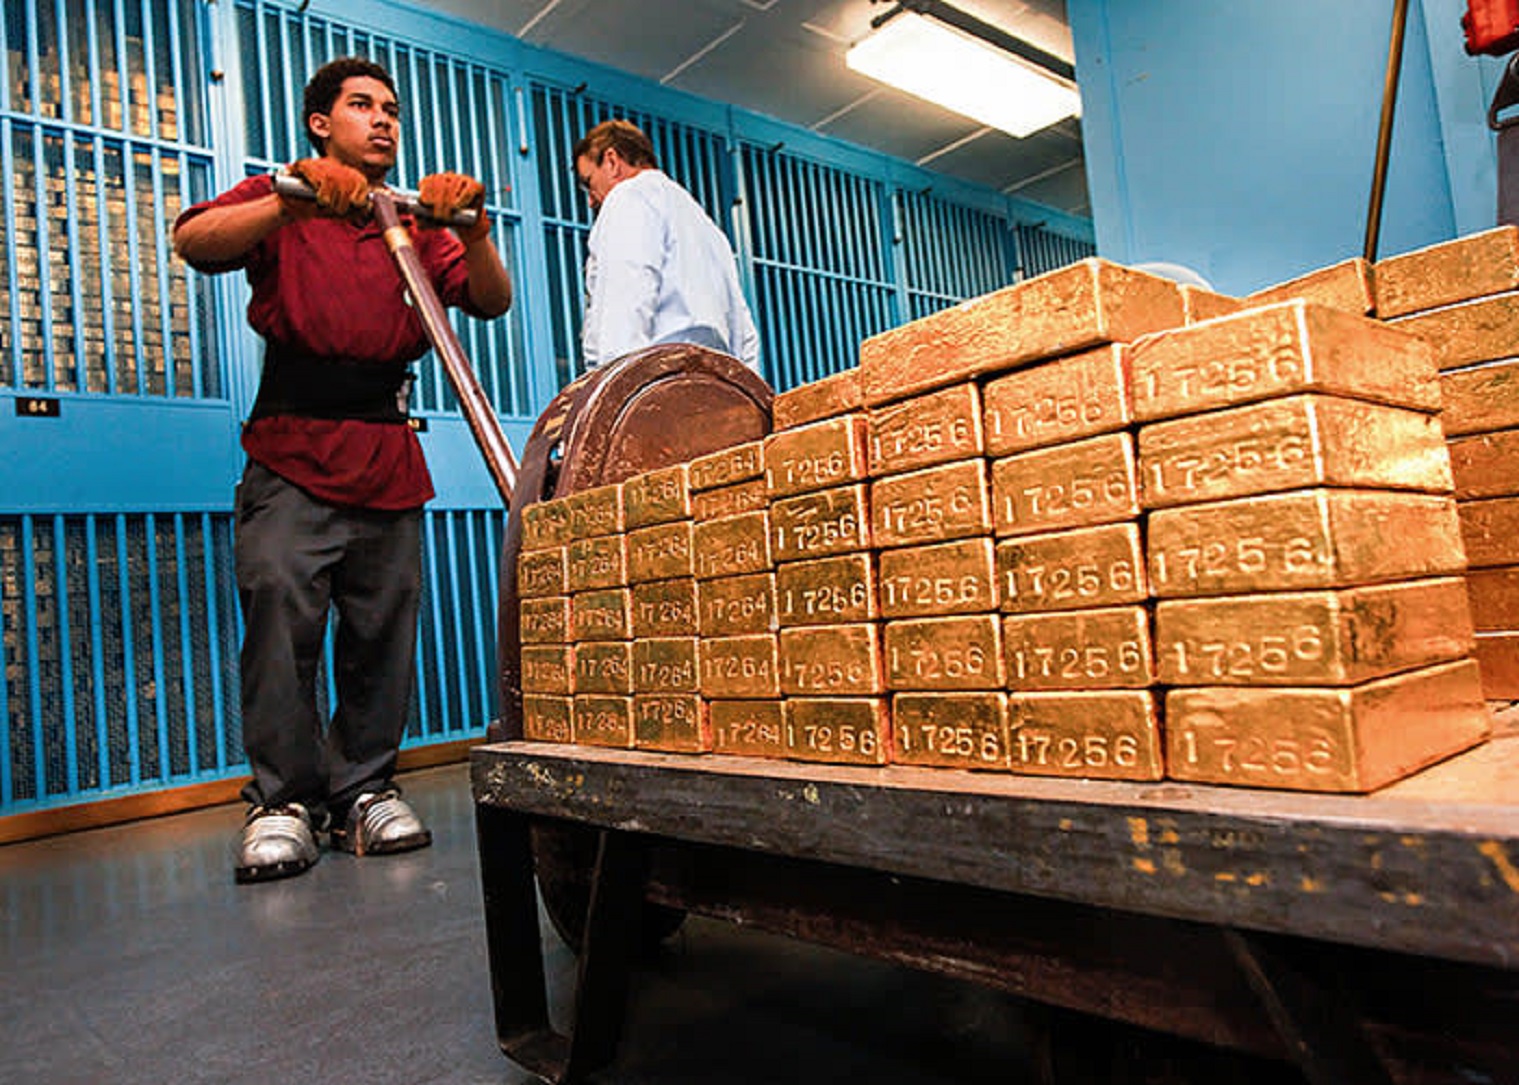 150噸黃金從歐美運抵中國，第15國從美國運回黃金，美聯儲不敢私吞-圖2